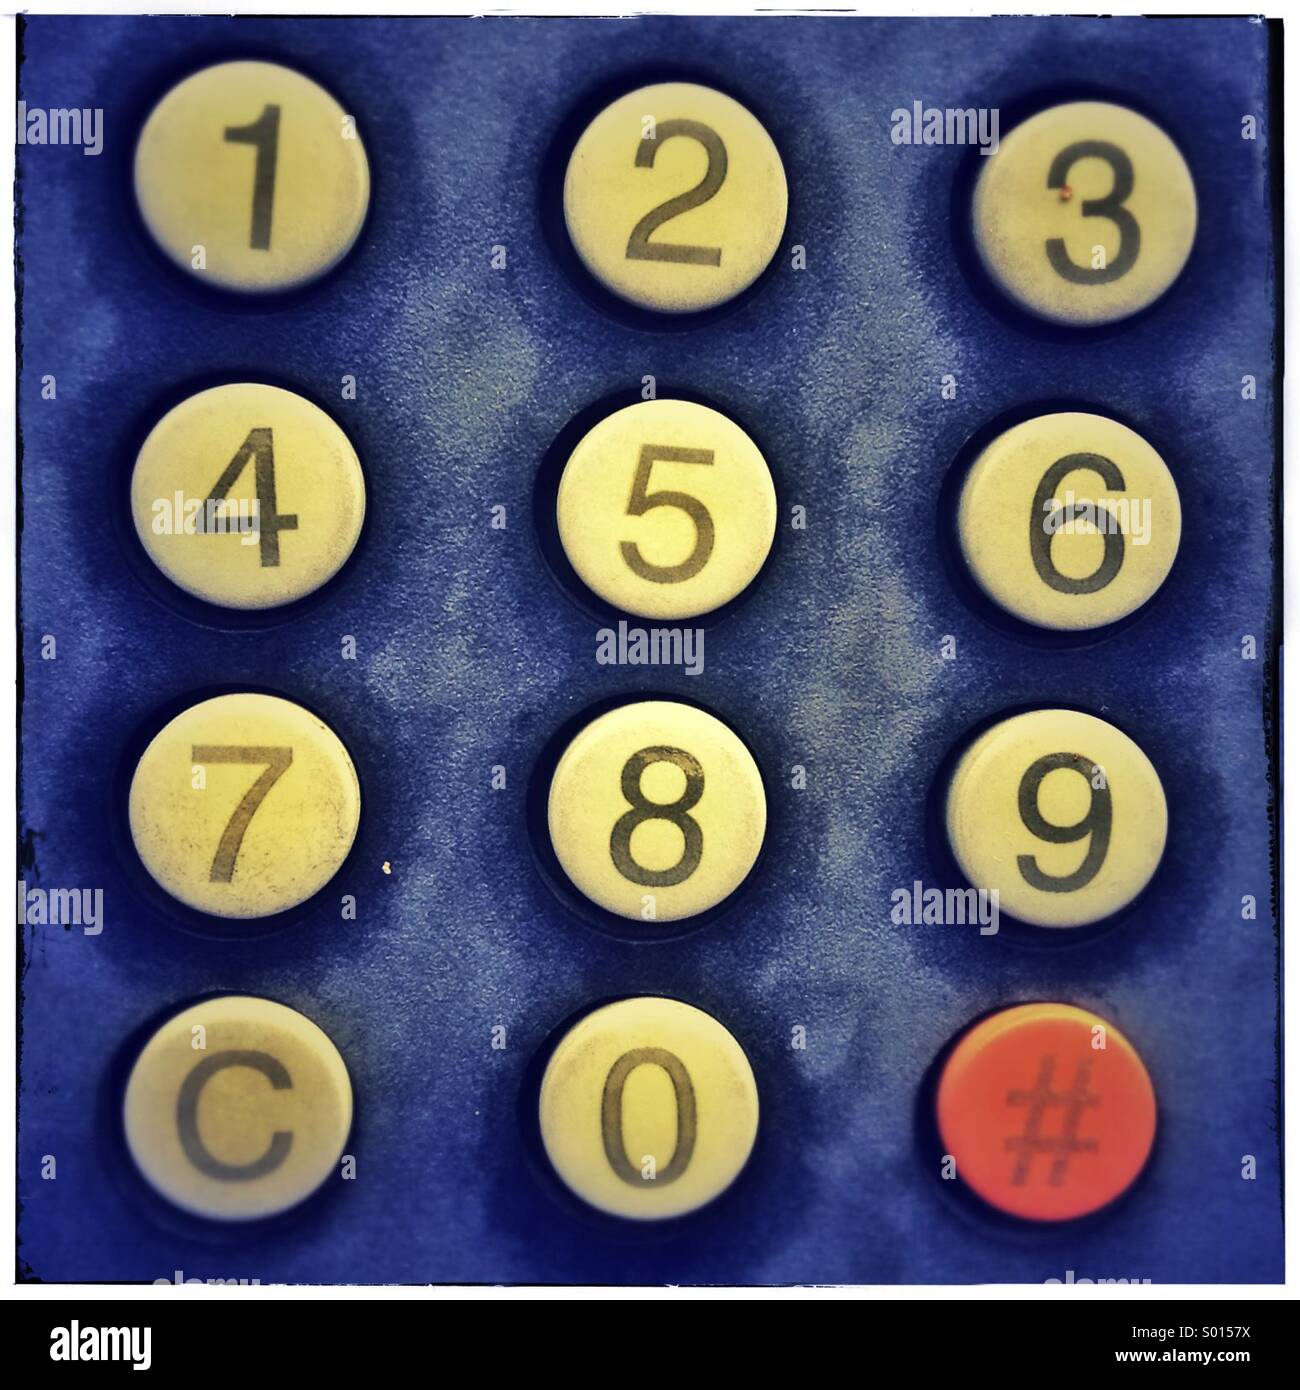 Nummer wählen-Telefon auf ein öffentliches Telefon Zifferblatt Stockfoto